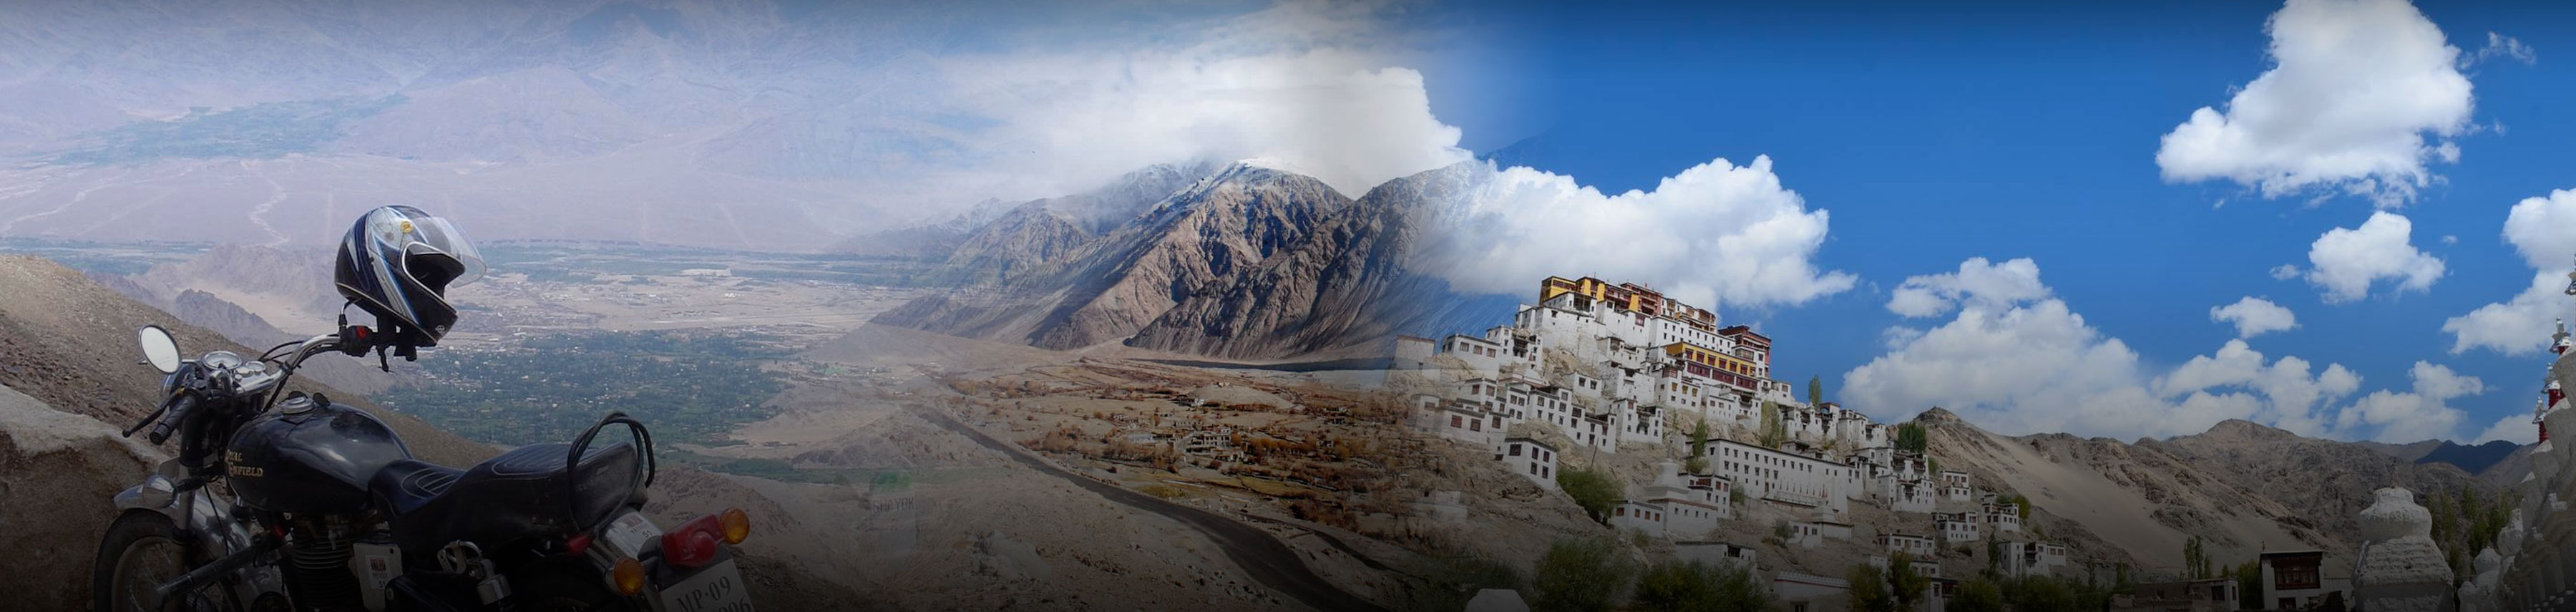 Ladakh Region Tour